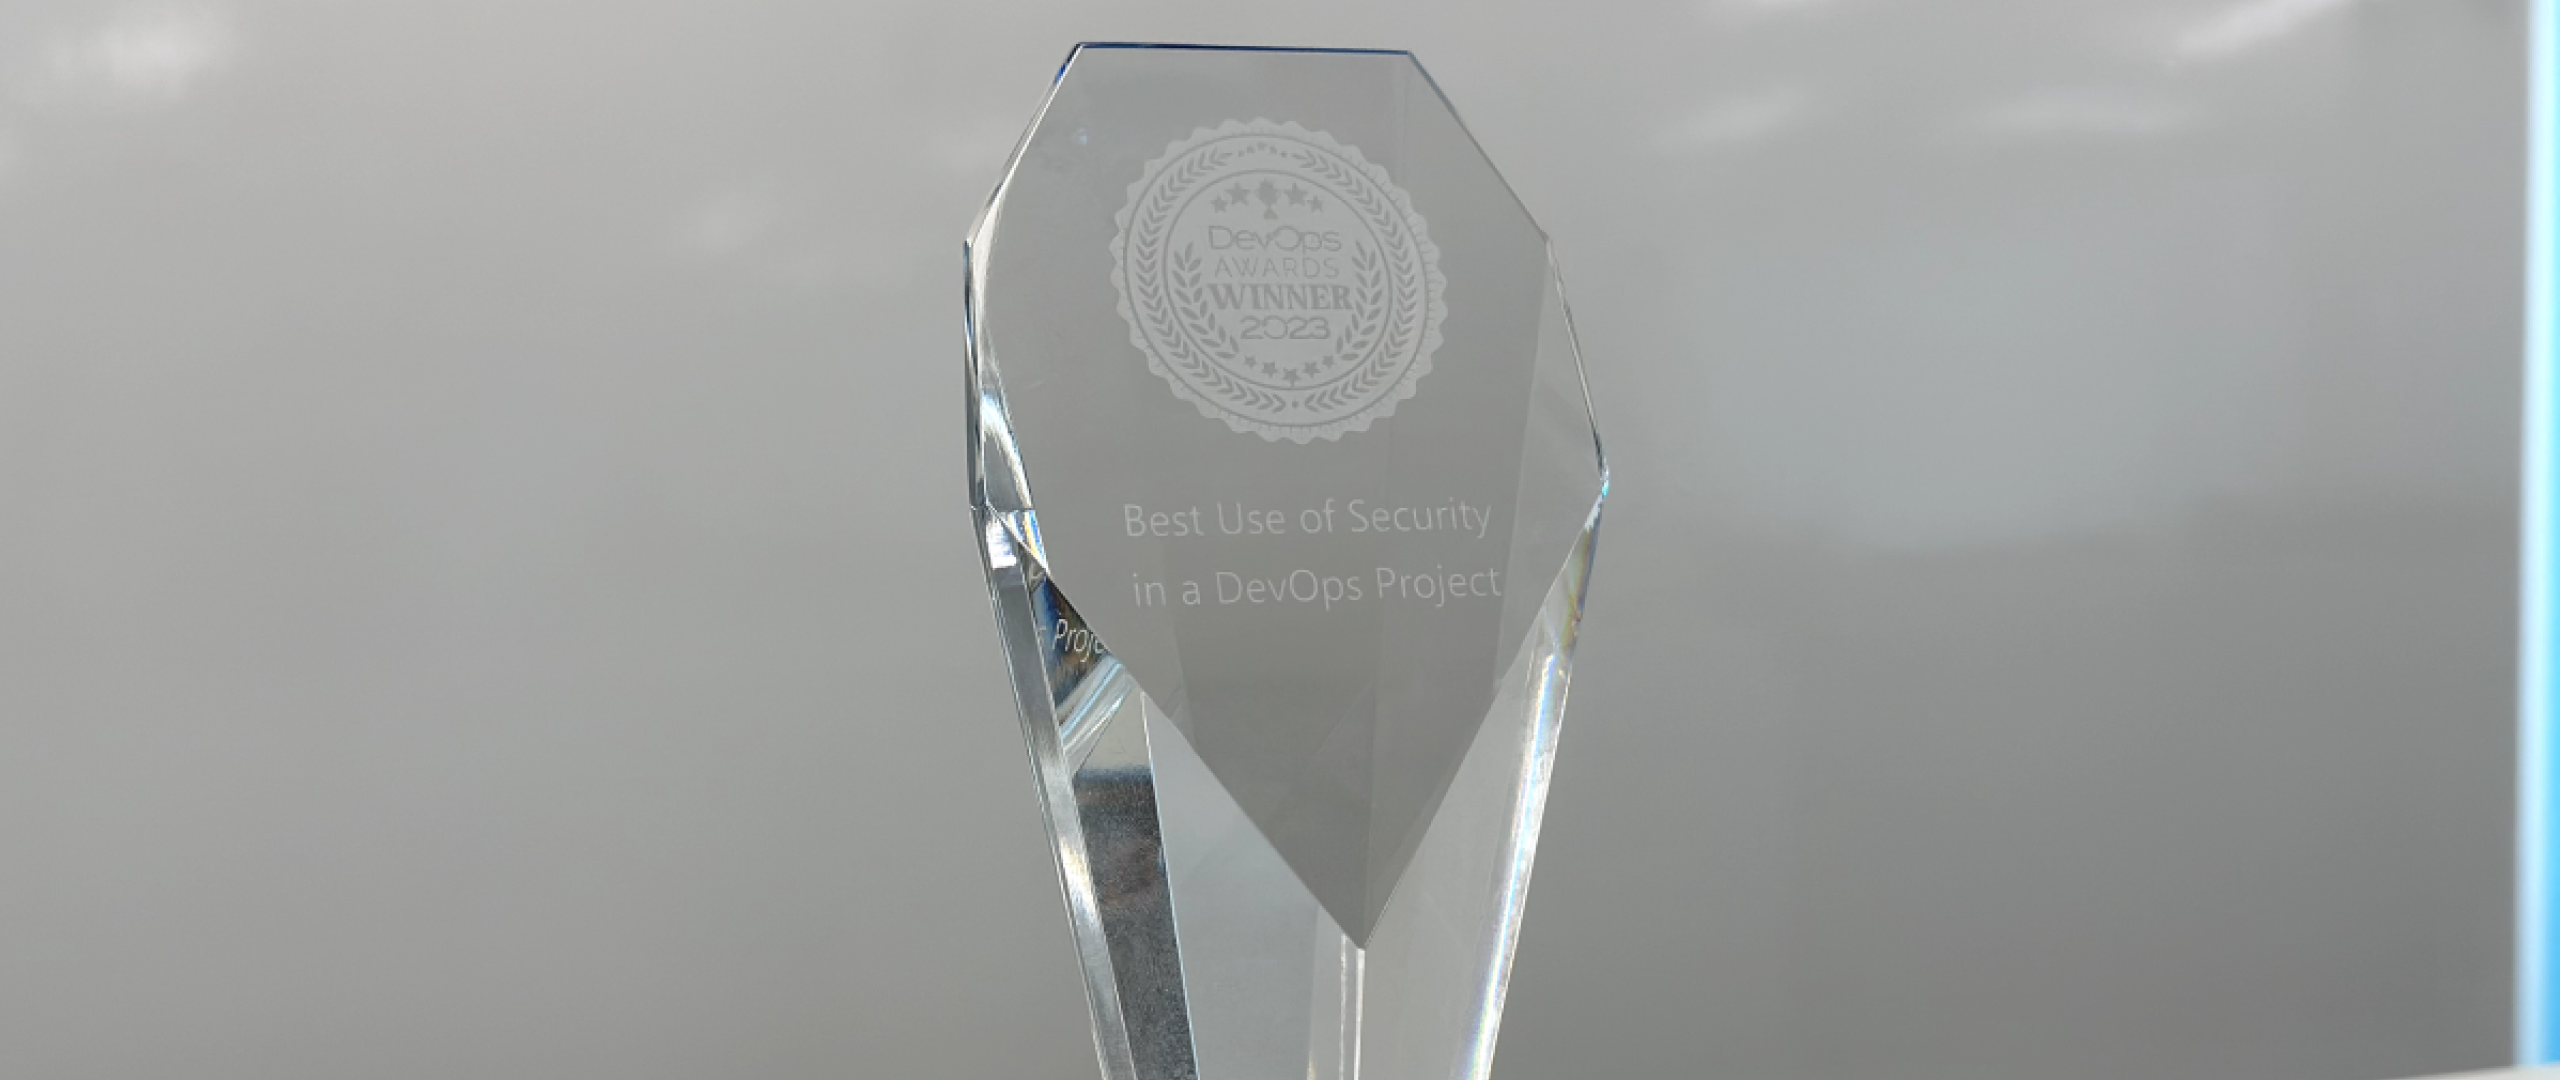 ІТ-специалисты из NIX получили мировую награду. Их отметили за лучшую стратегию по кибербезопасности